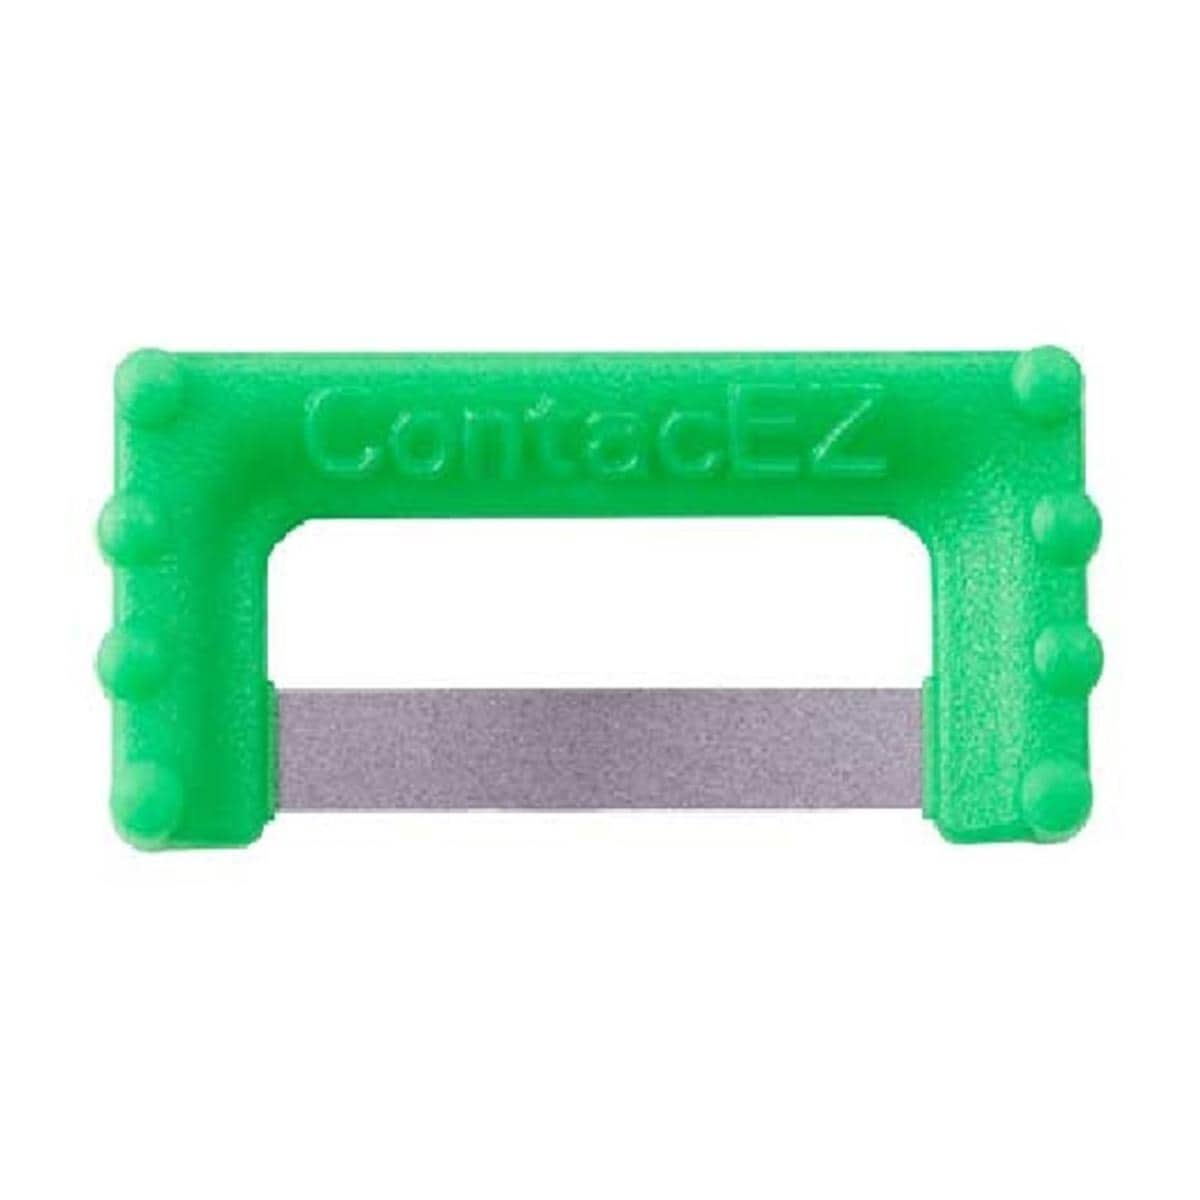 ContacEZ IPR - navulling - REF. 32632 - Groen 0,20mm, 32 stuks